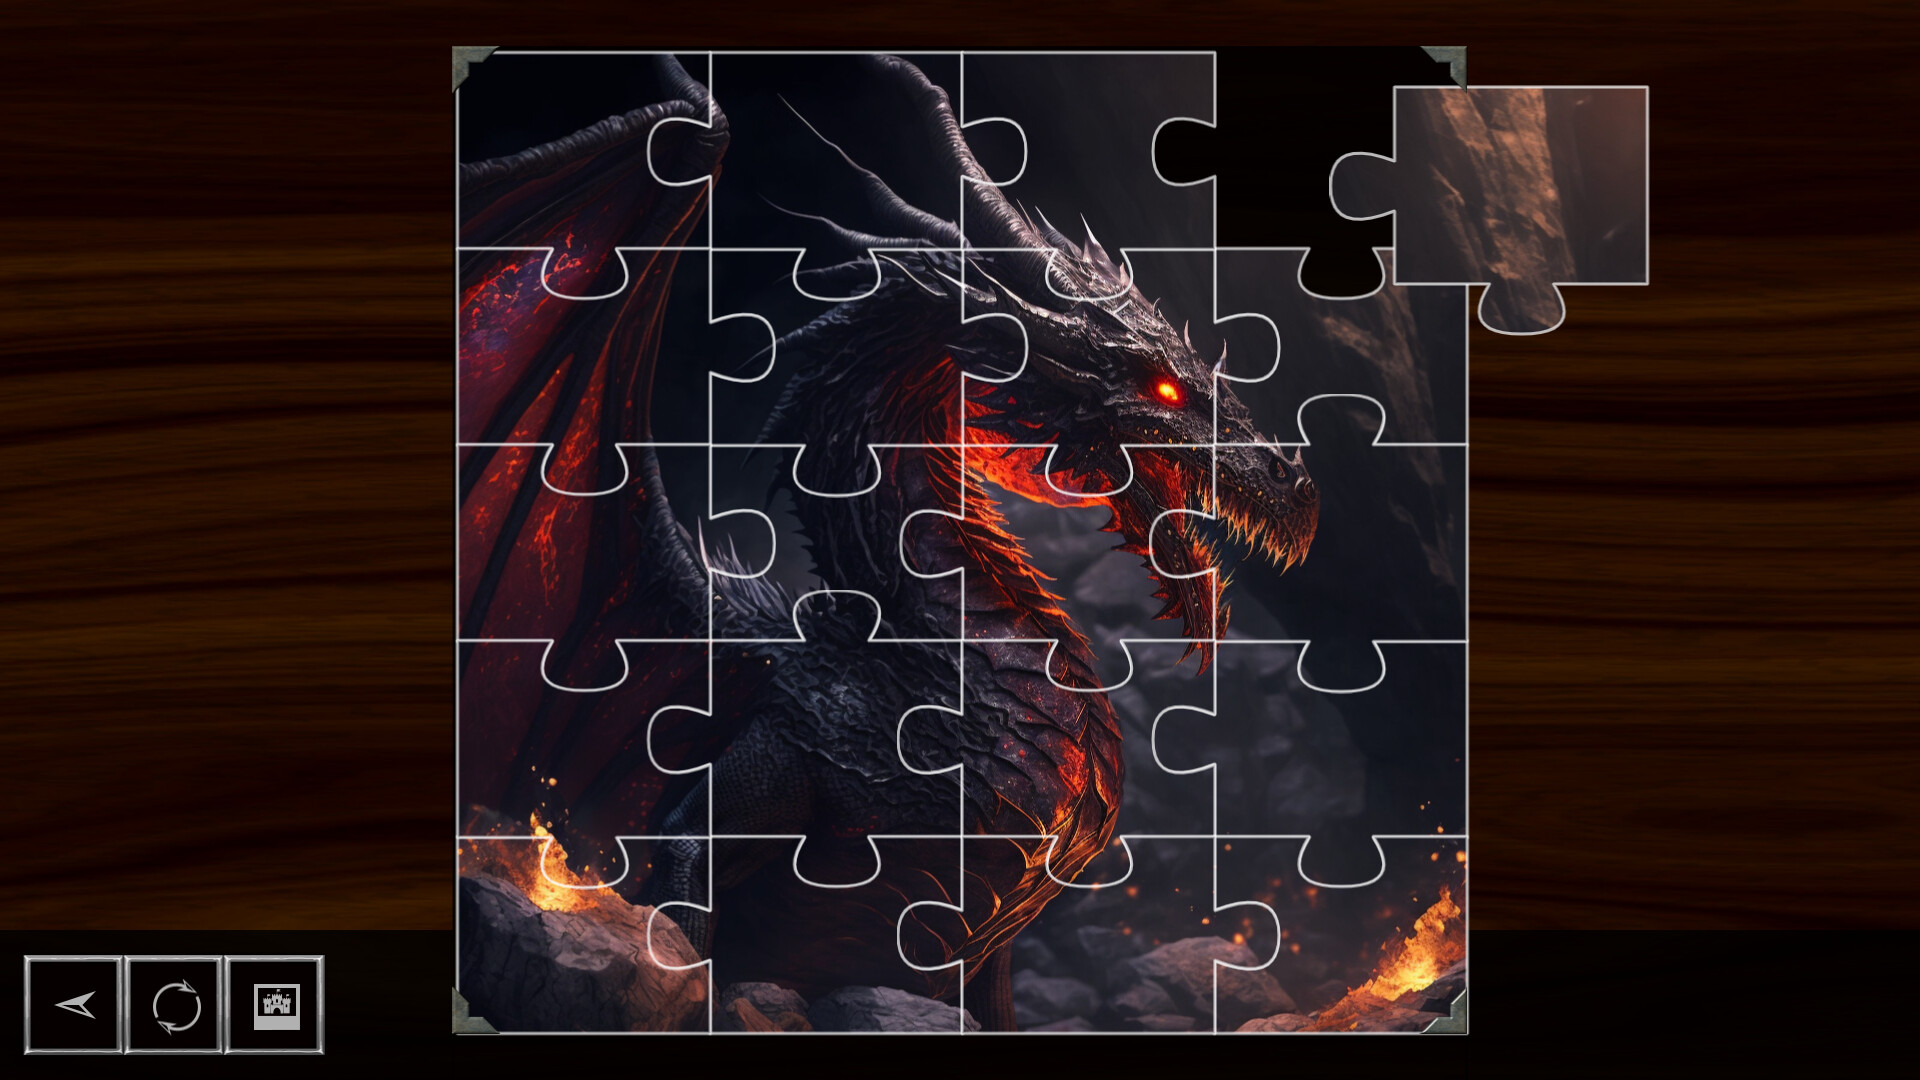 Dragon puzzle no Steam